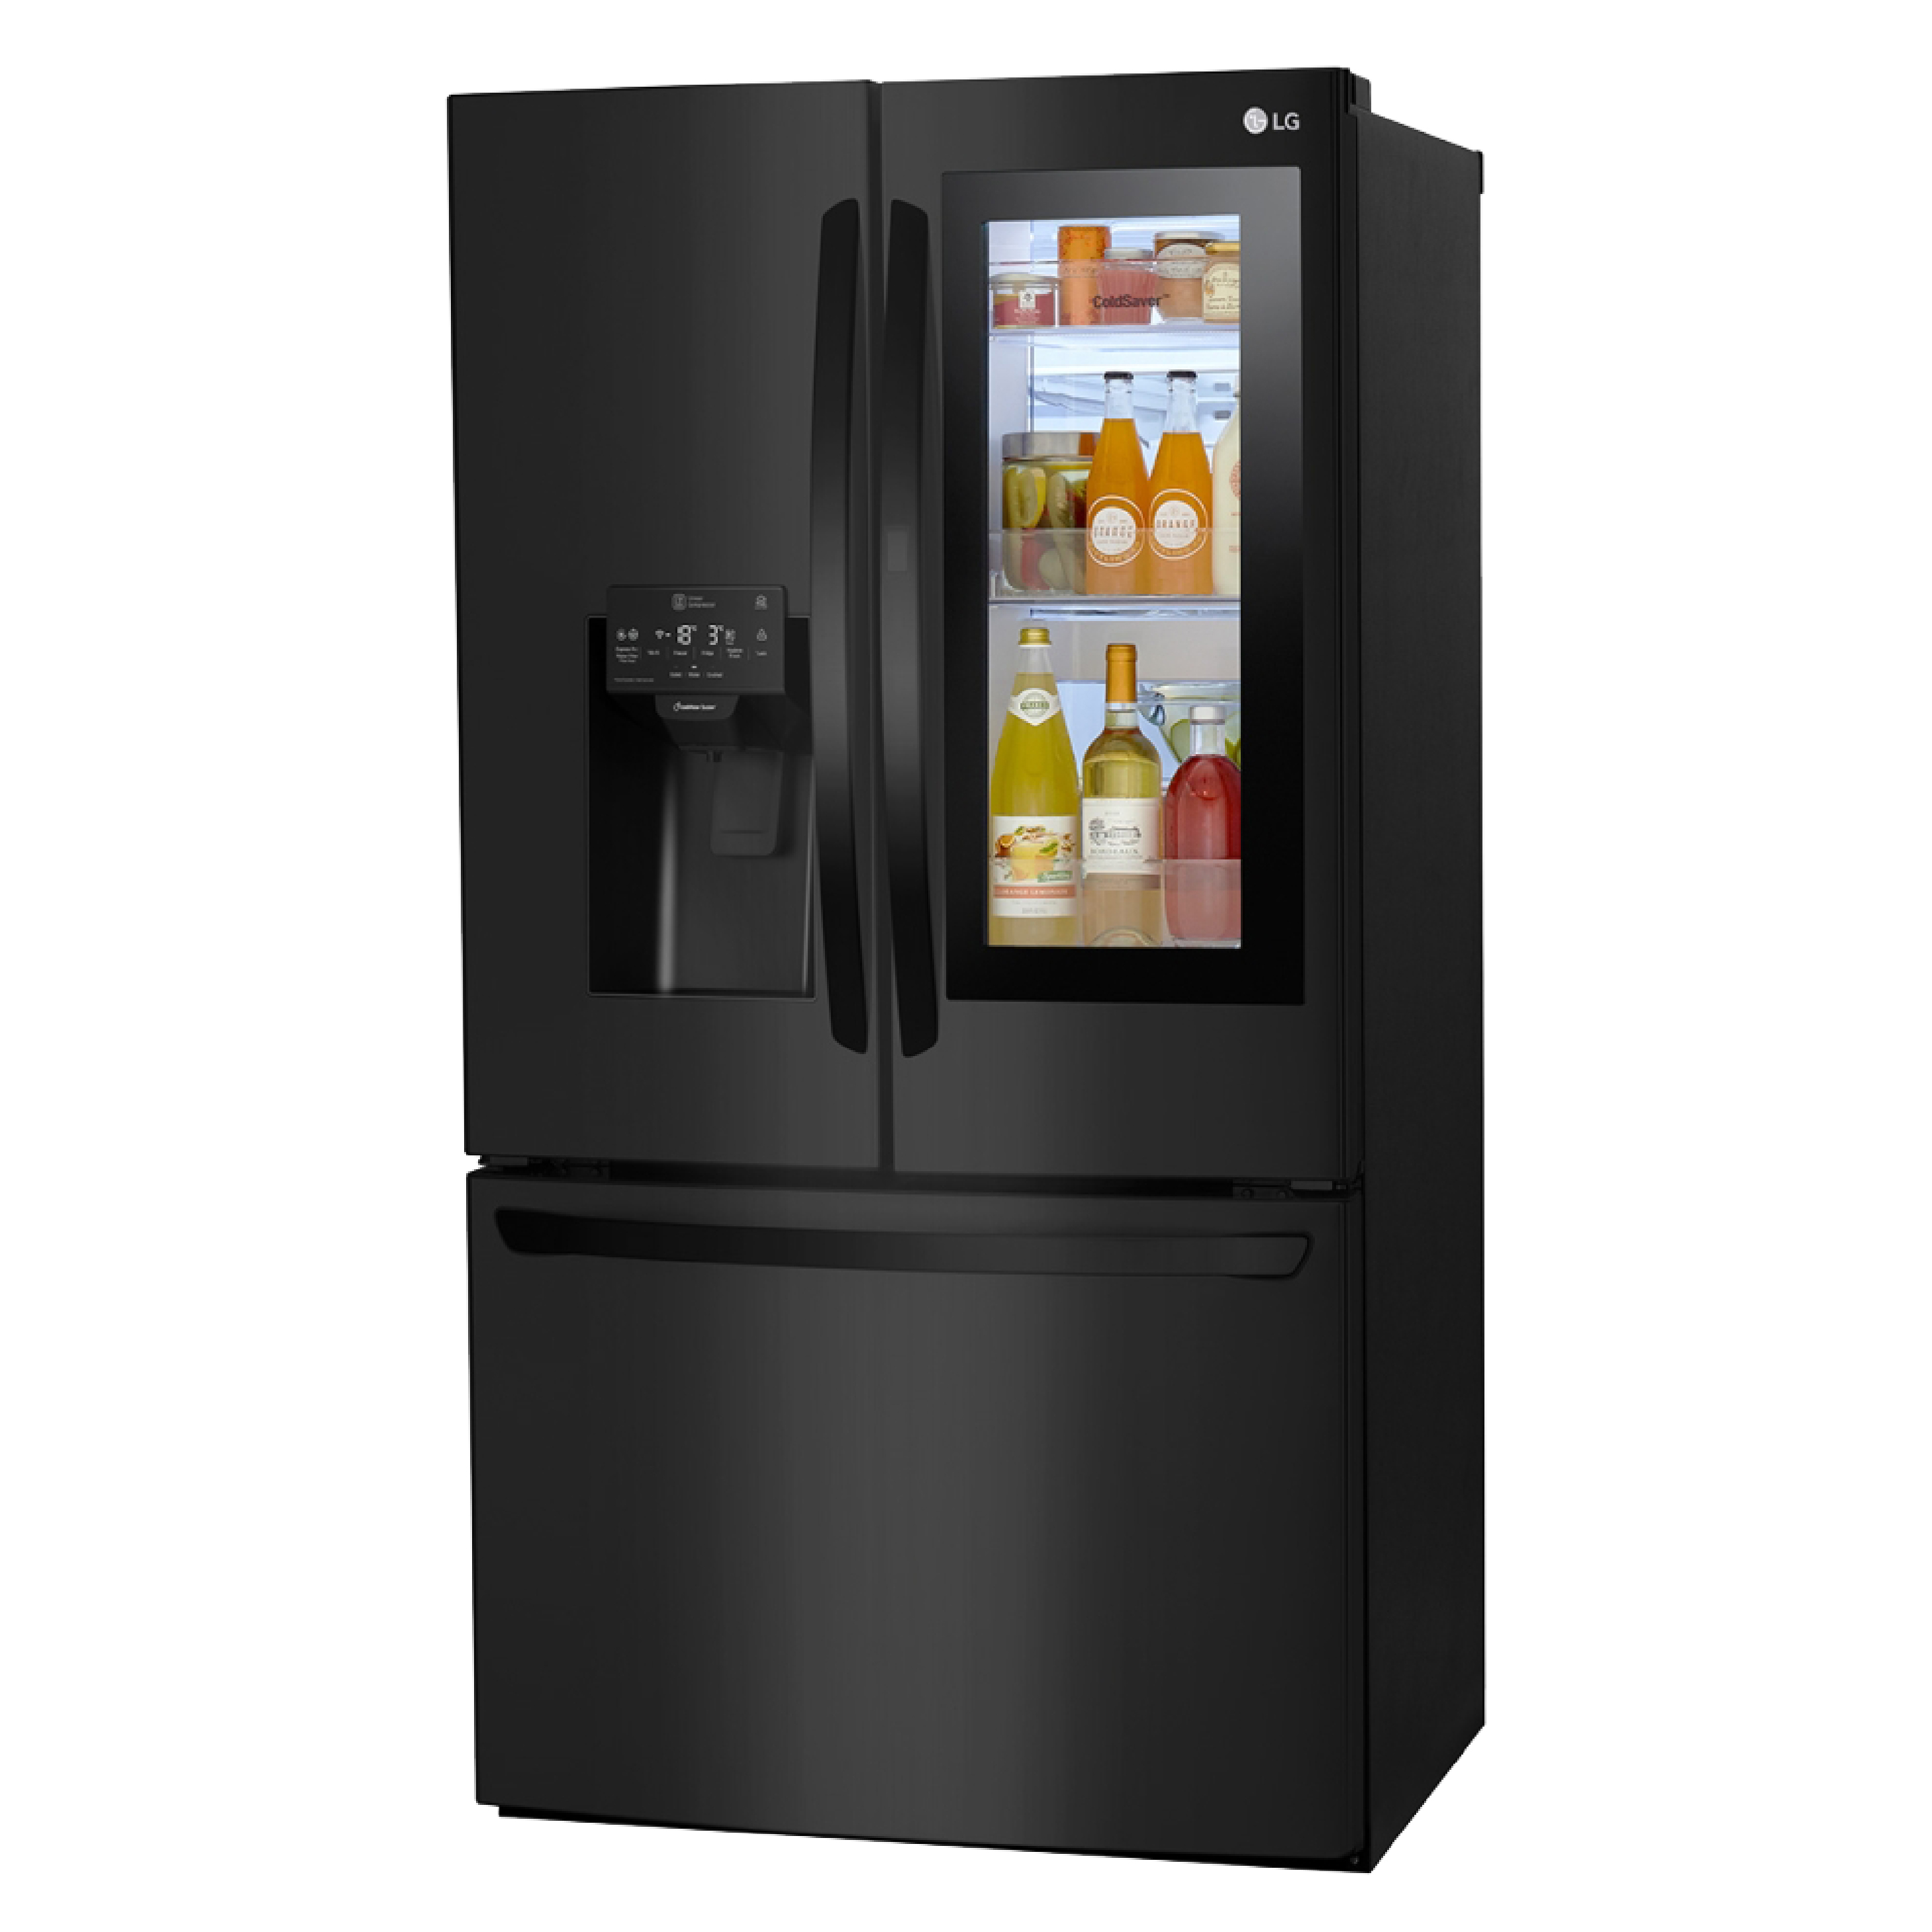 Encuentra la refrigeradora LG LM78SXT con controlador de humedad para verdura, bloqueo para niños y el mejor precio solo en Gran Hogar Online.